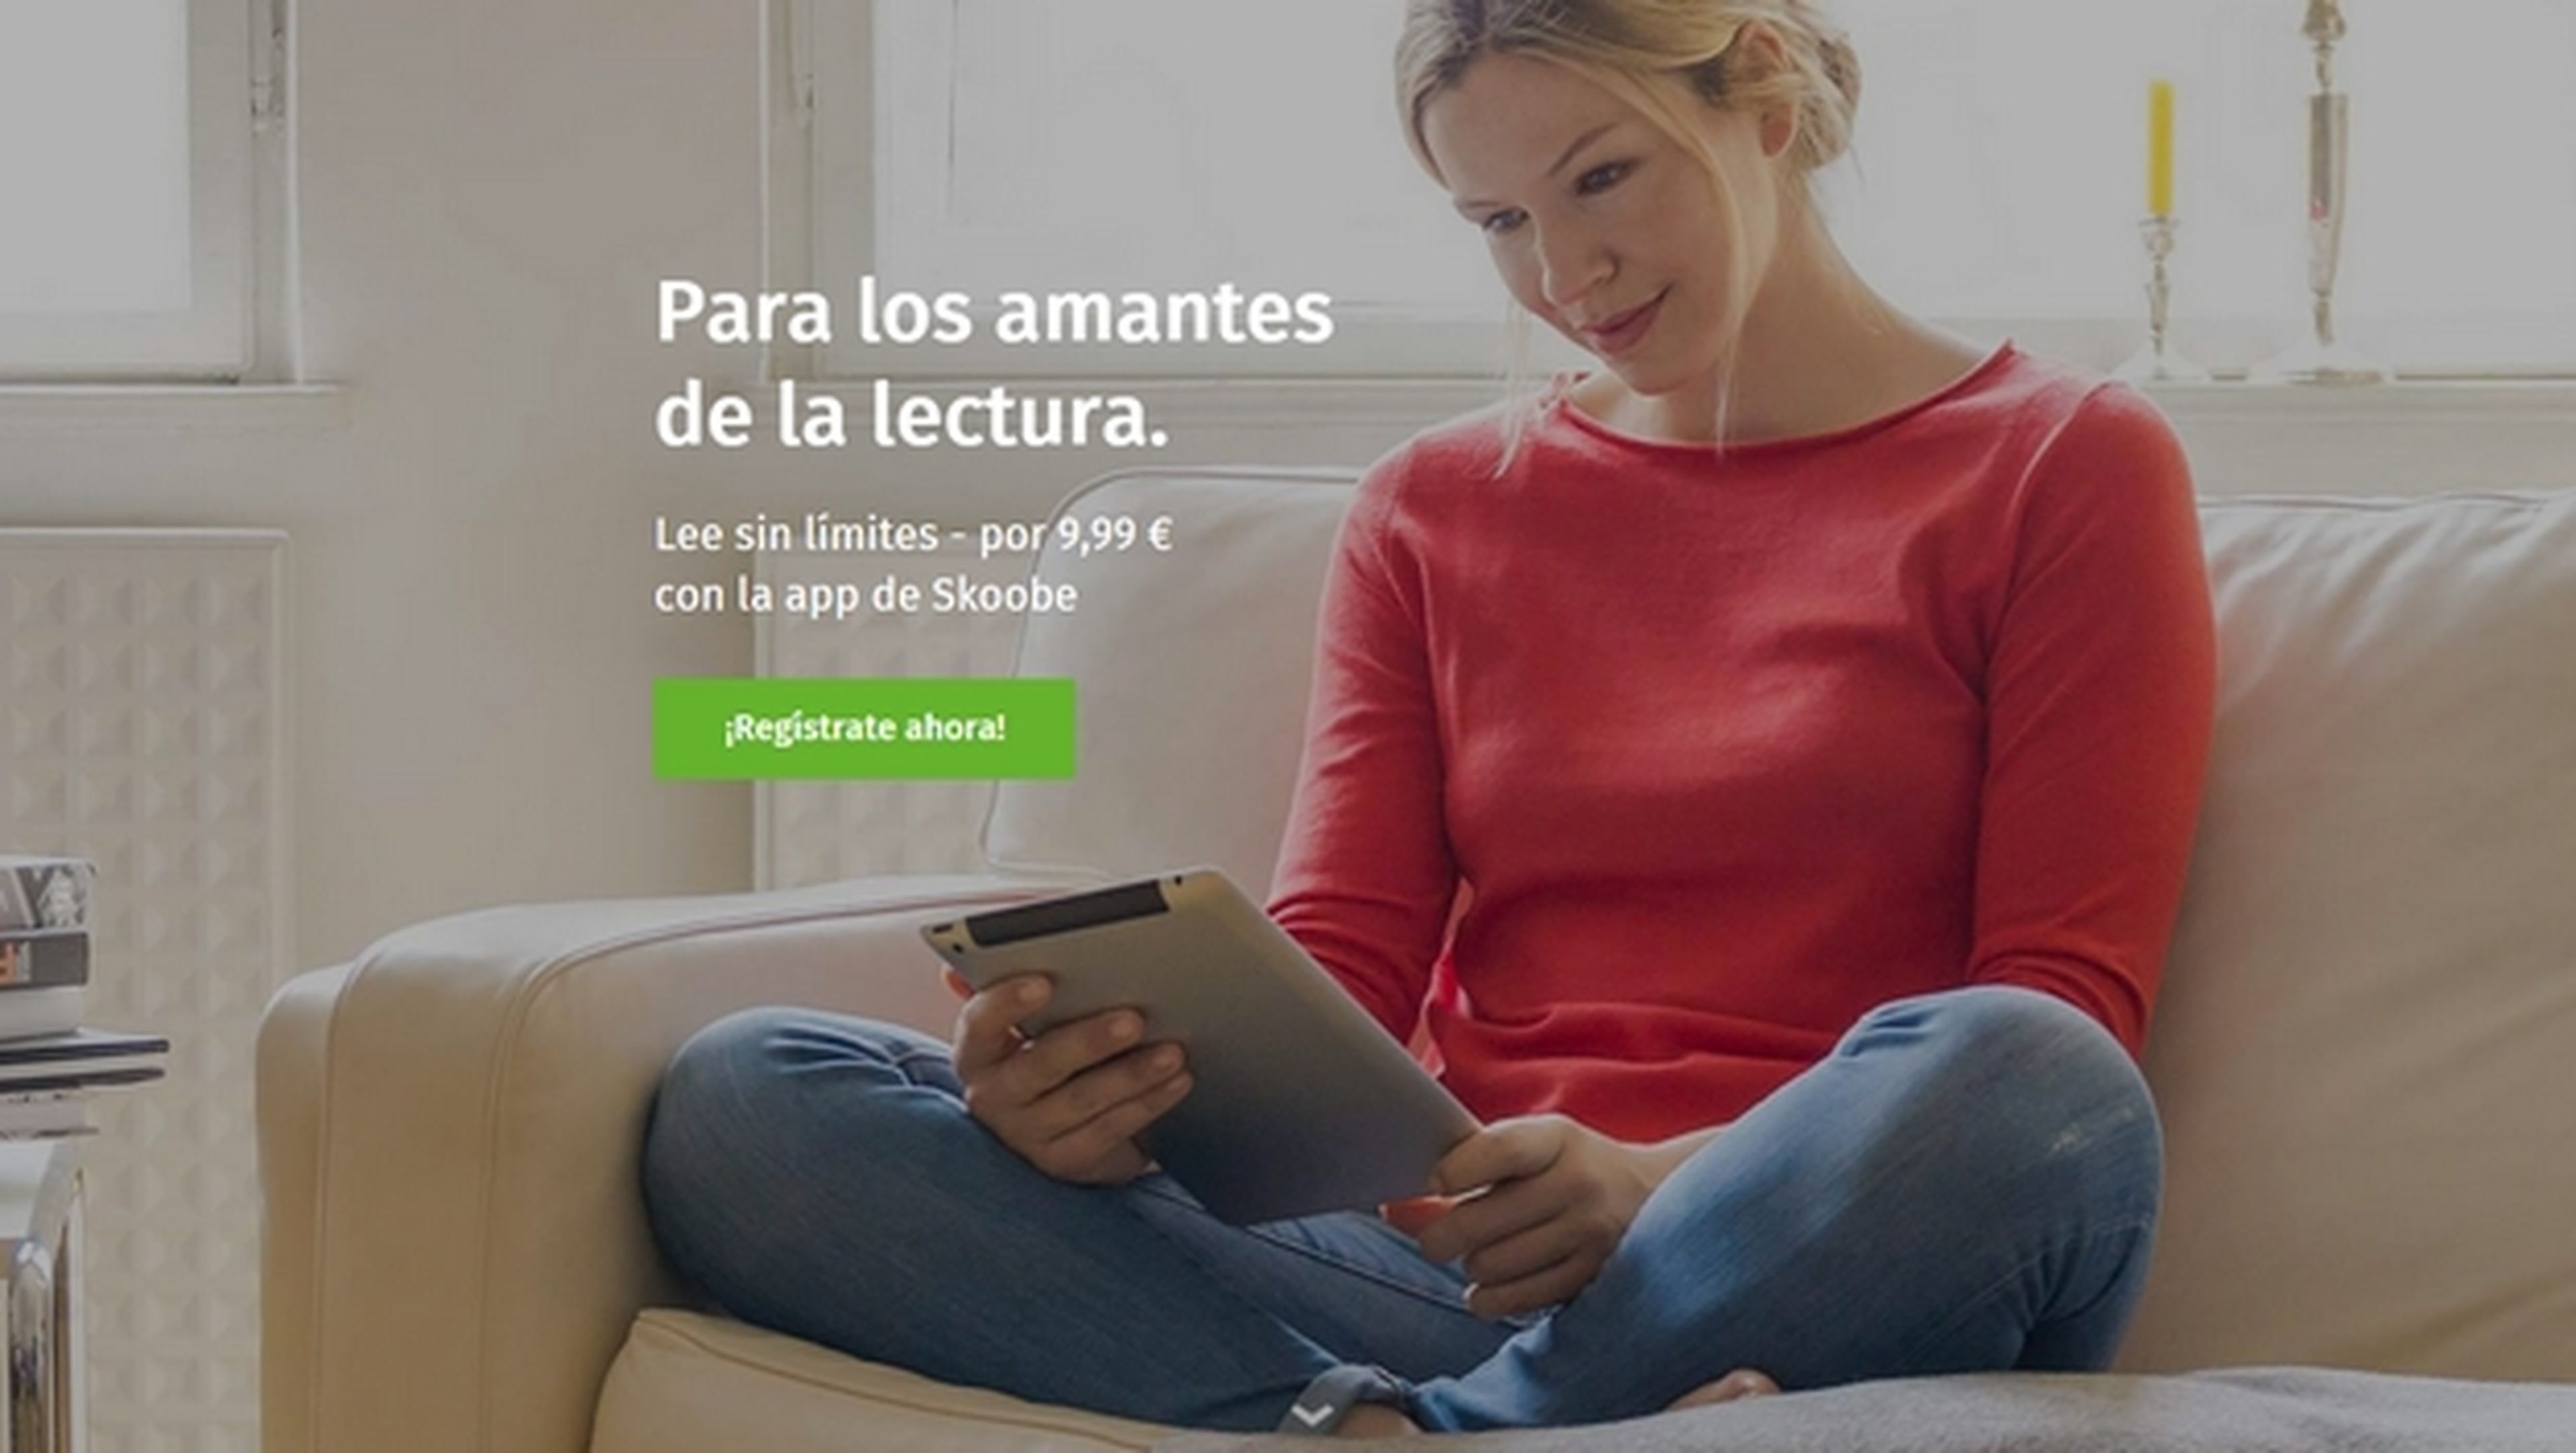 Llega Skoobe, el servicio de lectura con tarifa plana y miles de ebooks en español, estilo Spotify.